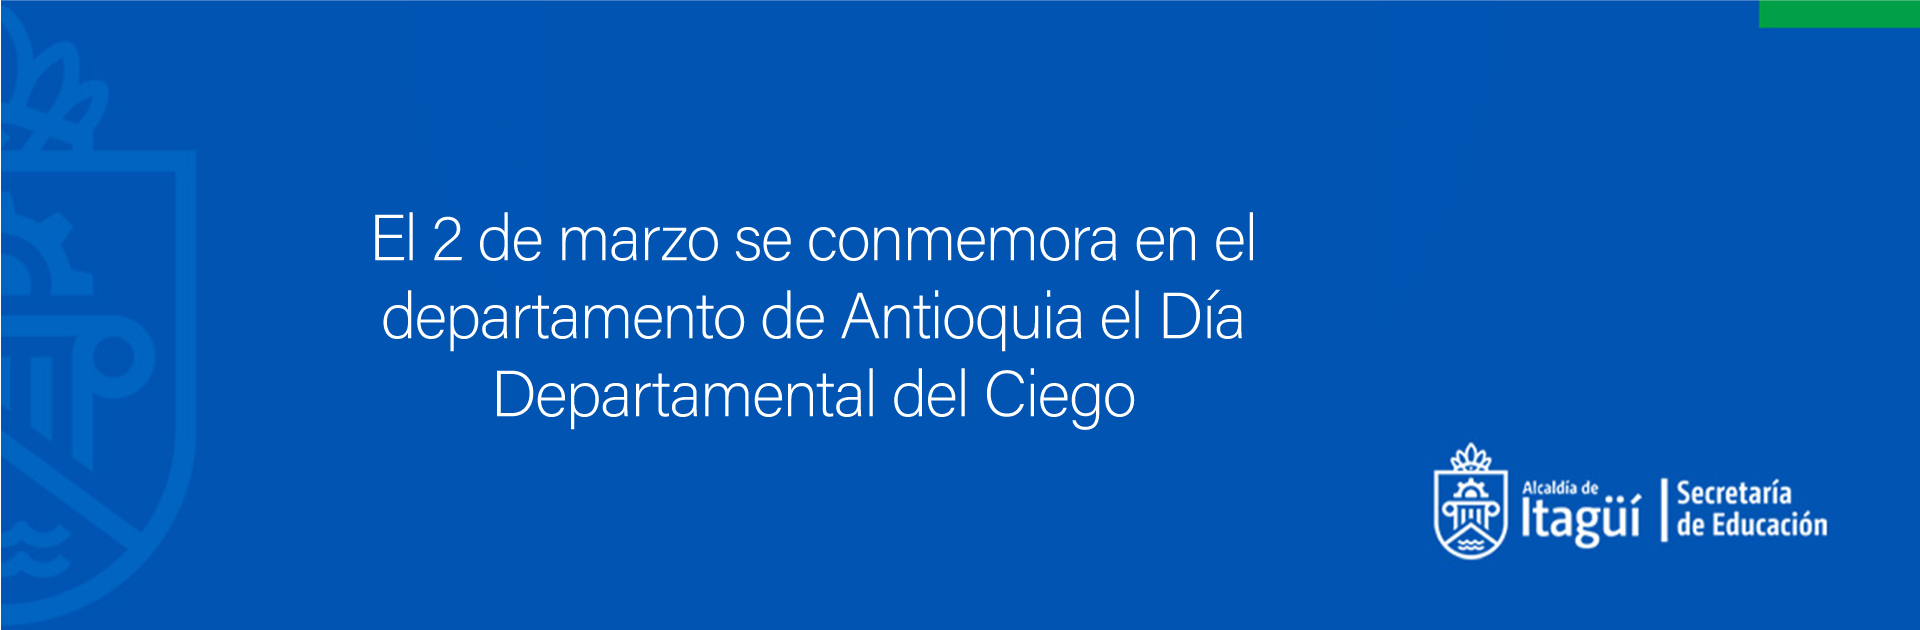 El 2 de marzo se conmemora en el departamento de Antioquia el Día Departamental del Ciego